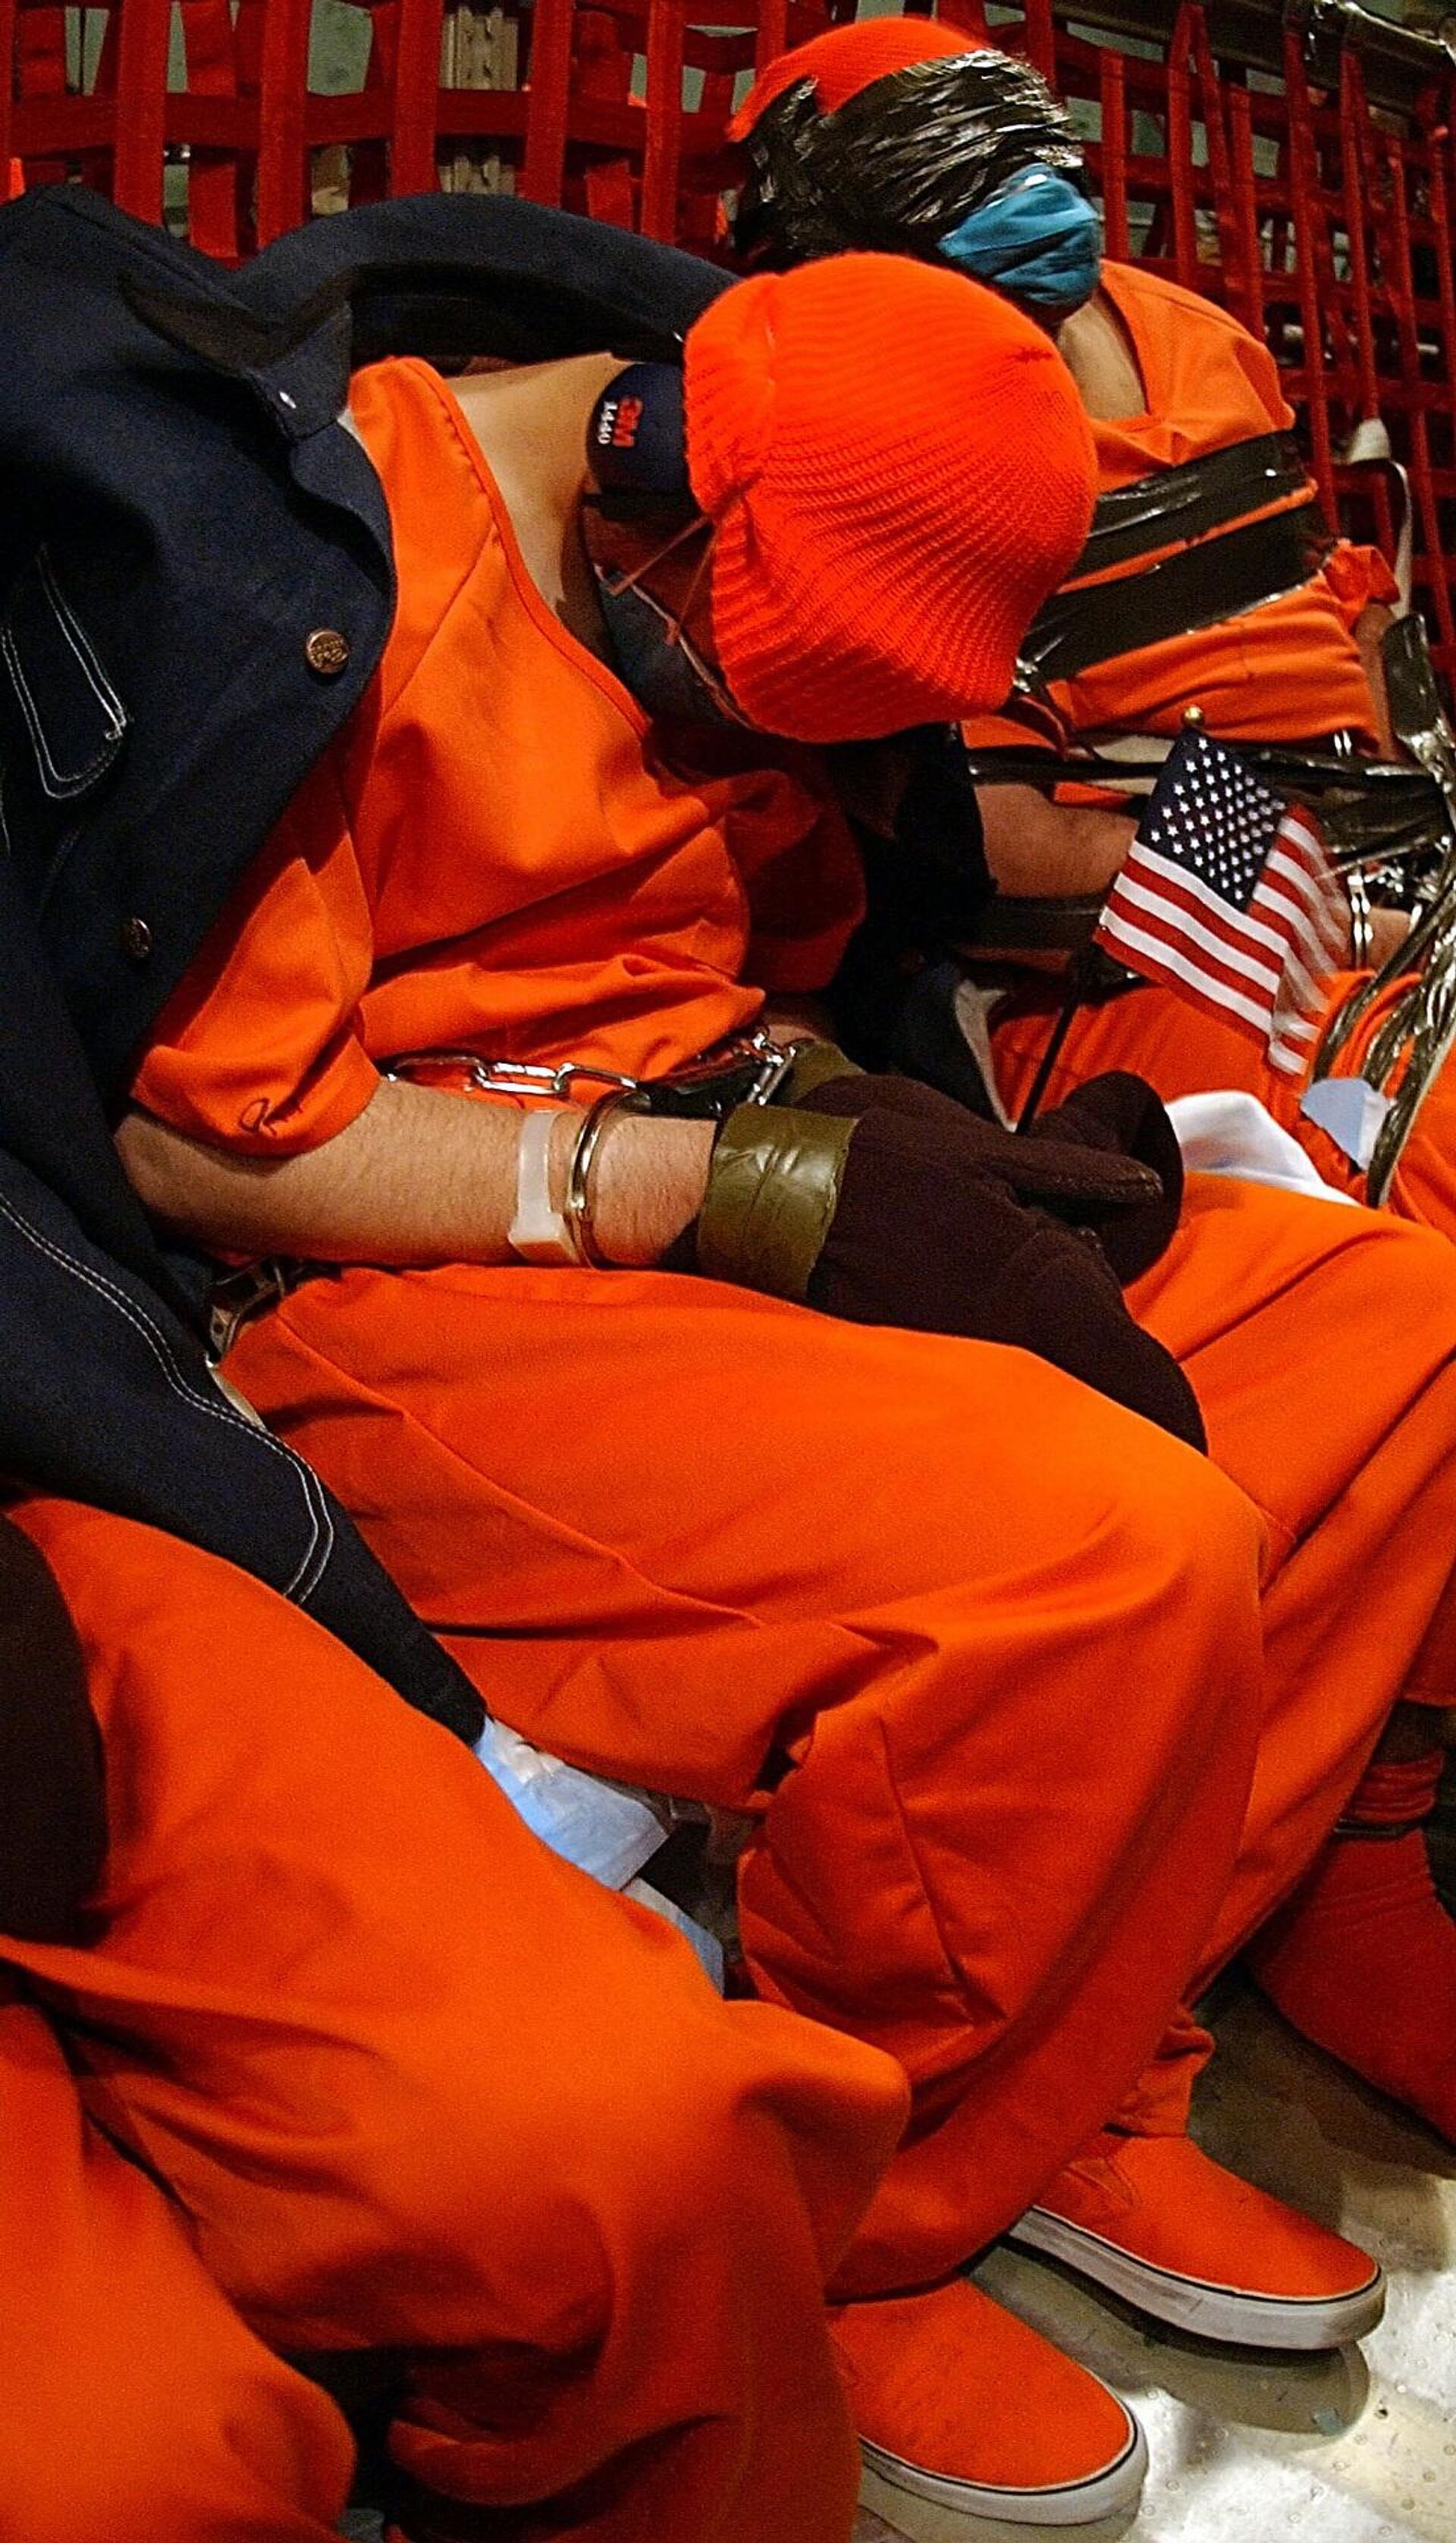 Primeiros prisioneiros afegãos chegam ao centro de detenção da Baía de Guantánamo nos EUA - Sputnik Brasil, 1920, 16.06.2022